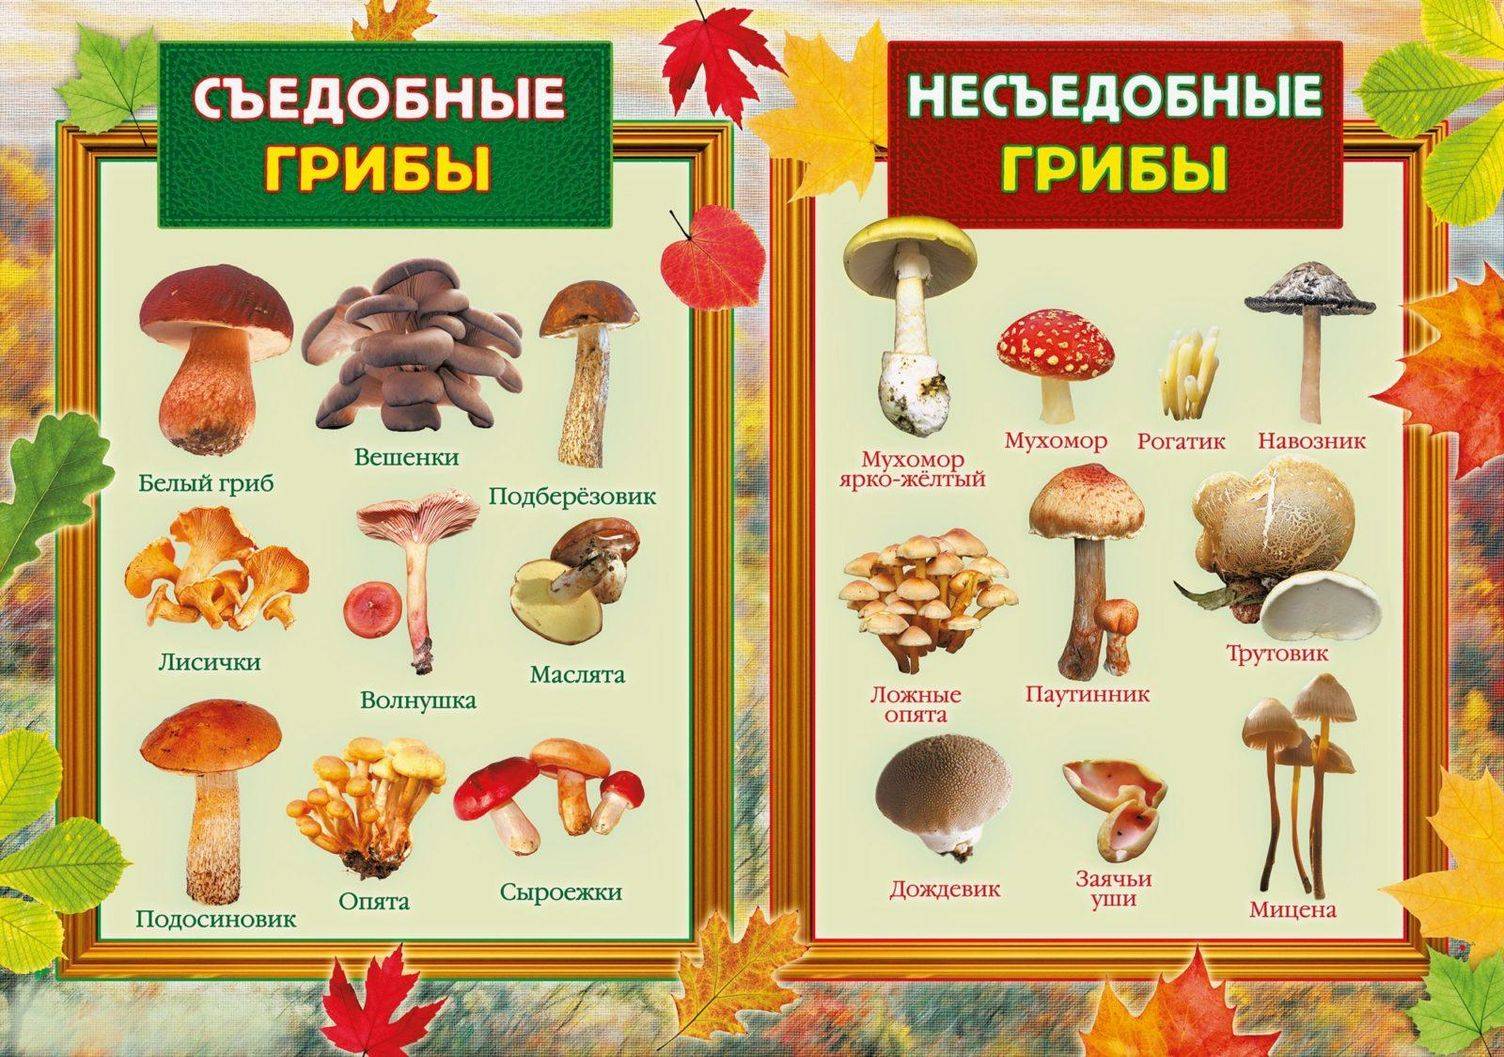 Белый гриб на второе: рецепты приготовления блюд с фото и сопроводительными инструкциями